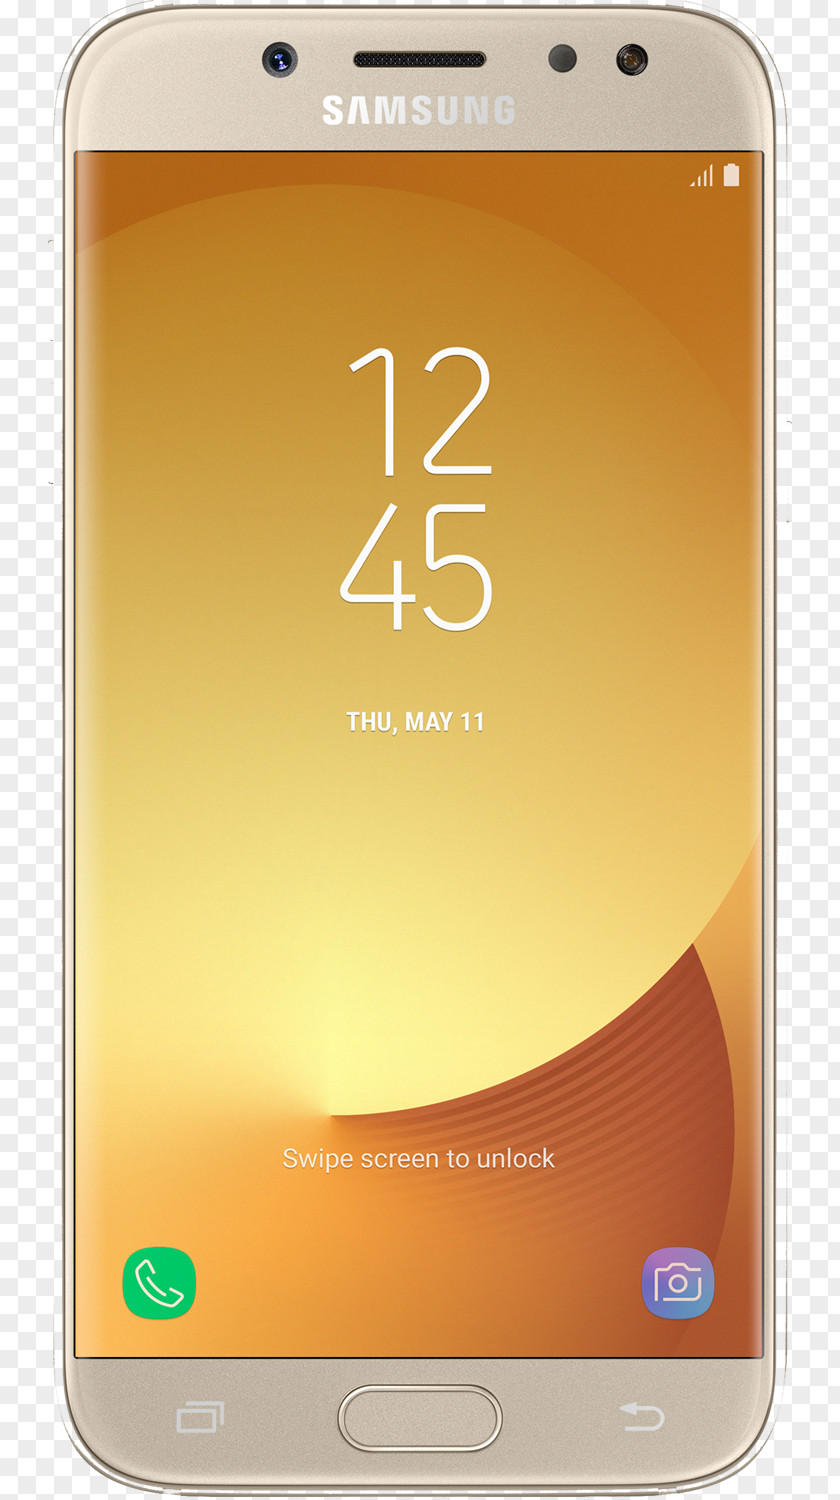 J Gold Samsung Galaxy J5 J7 Pro Smartphone Dual SIM PNG